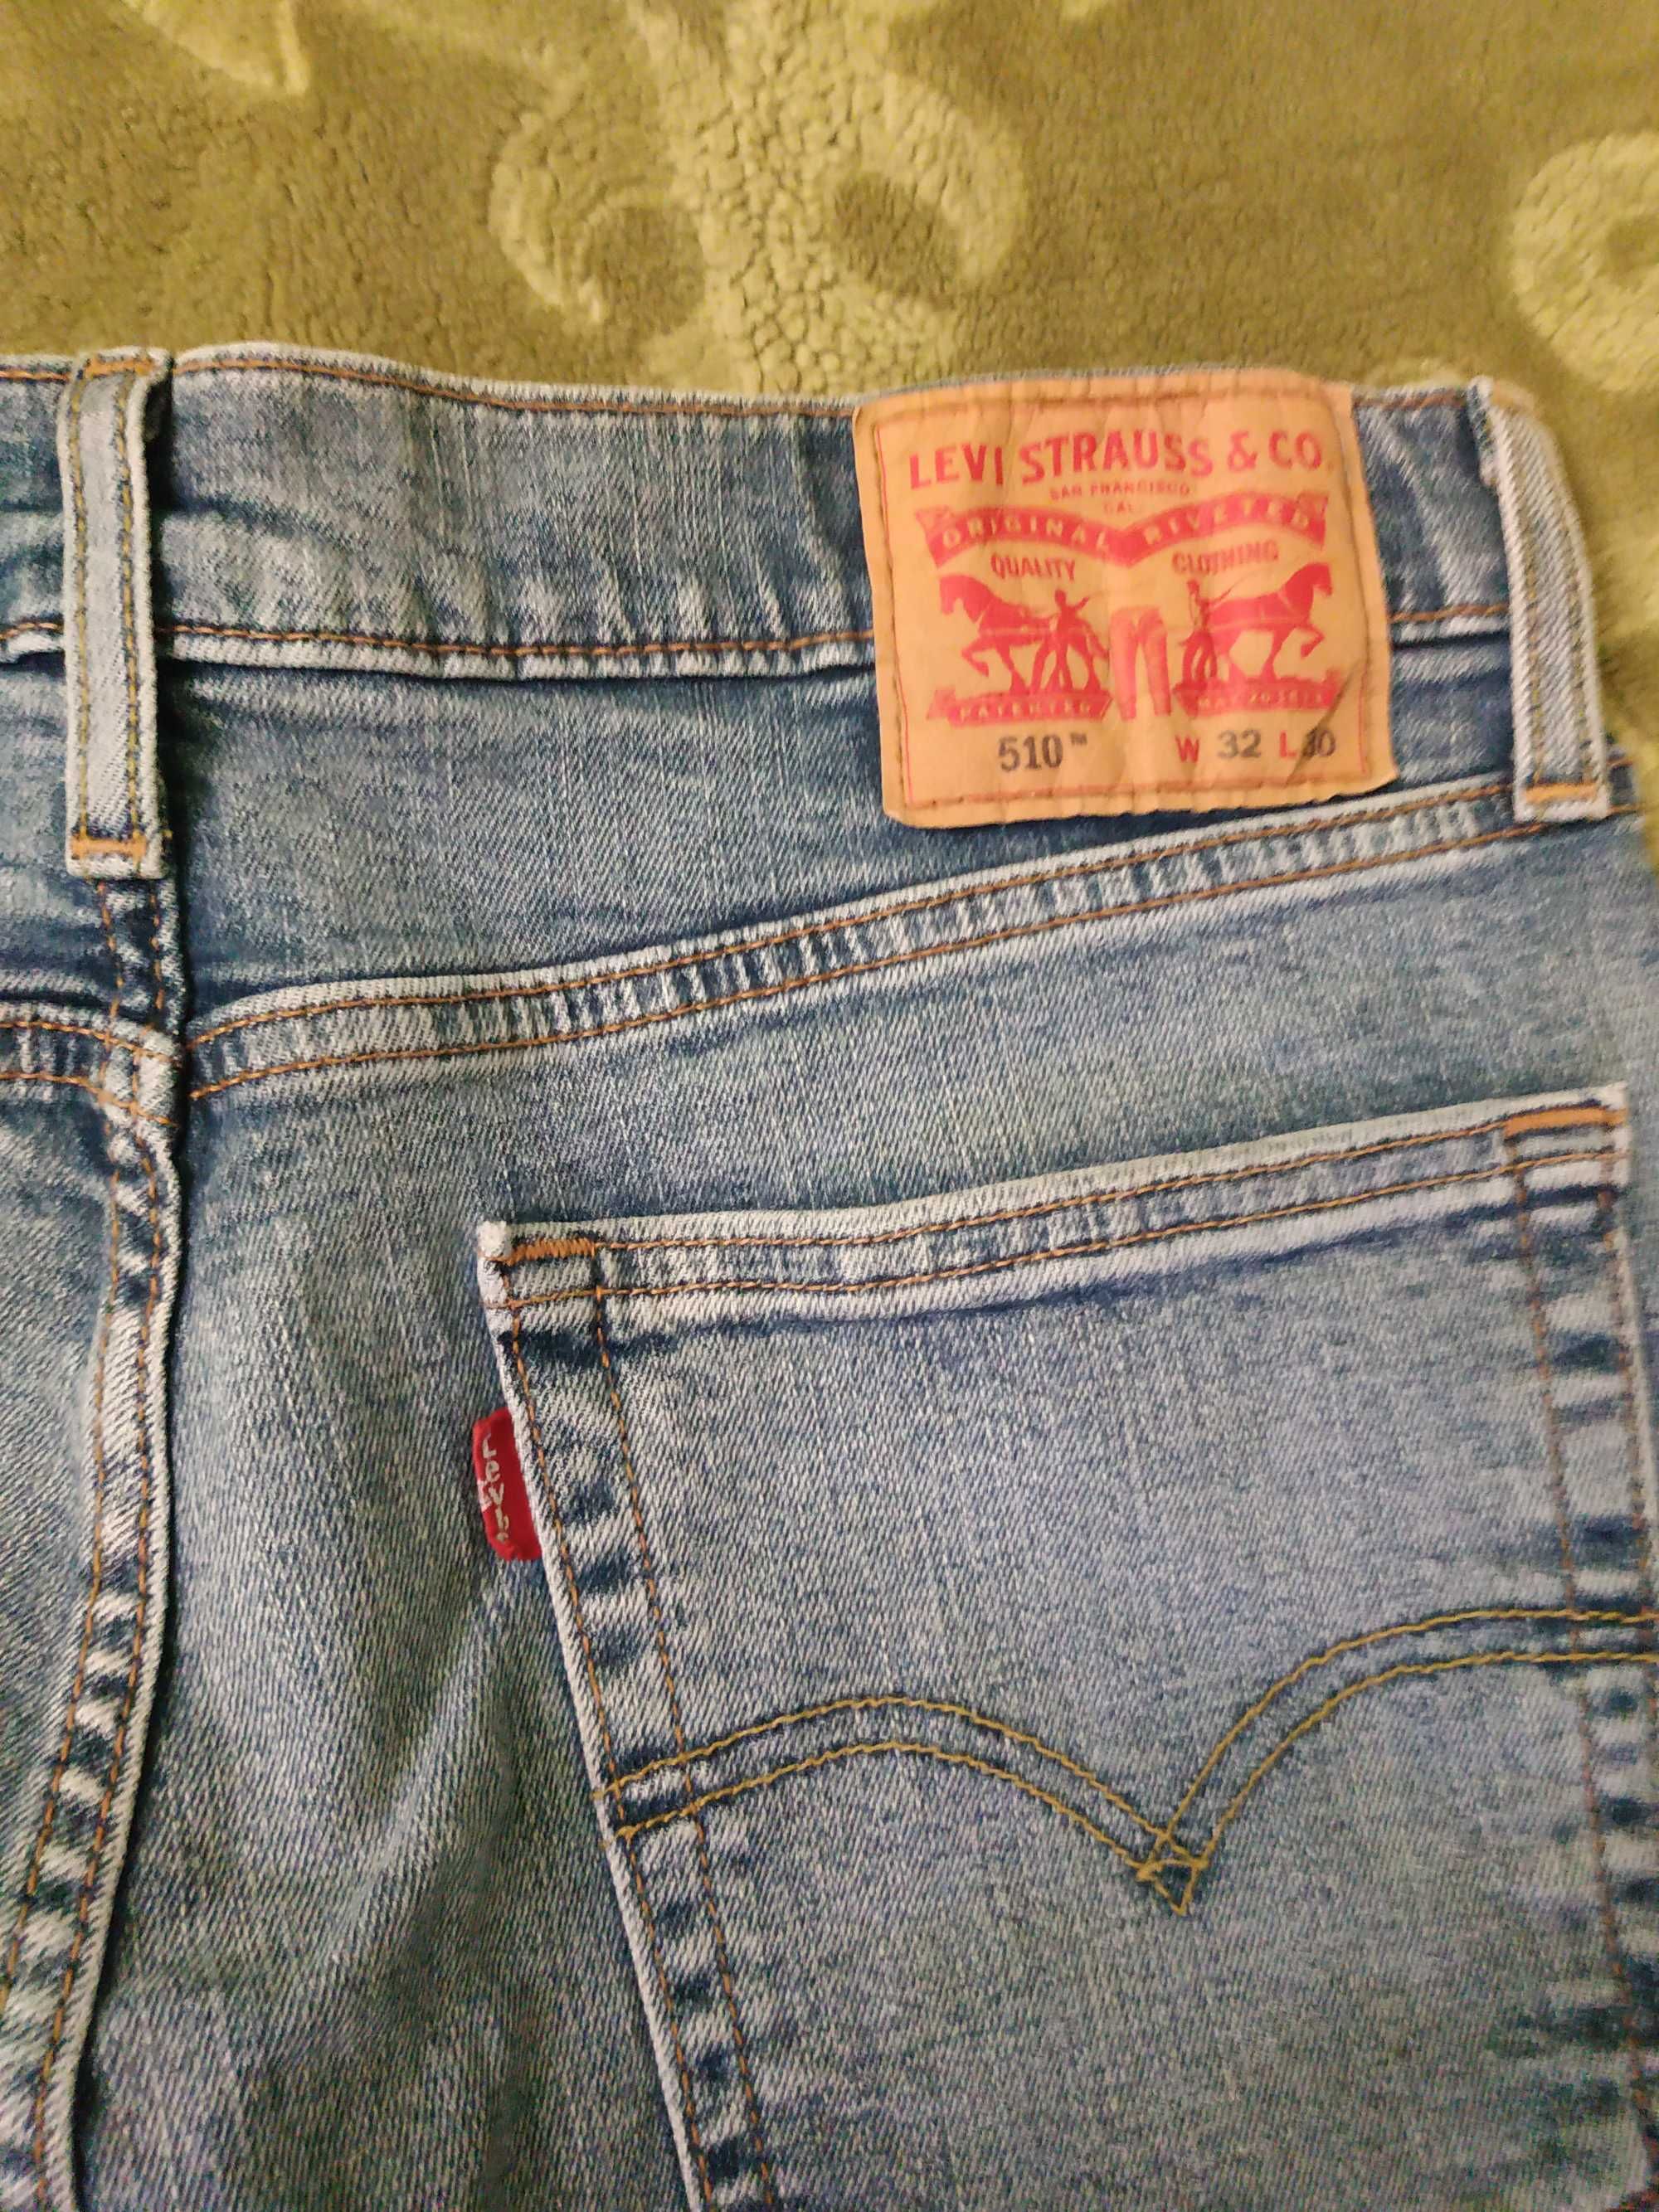 Spodnie męskie Levis oryginalne mod. 510 pas 84 stan bdb niebieskie